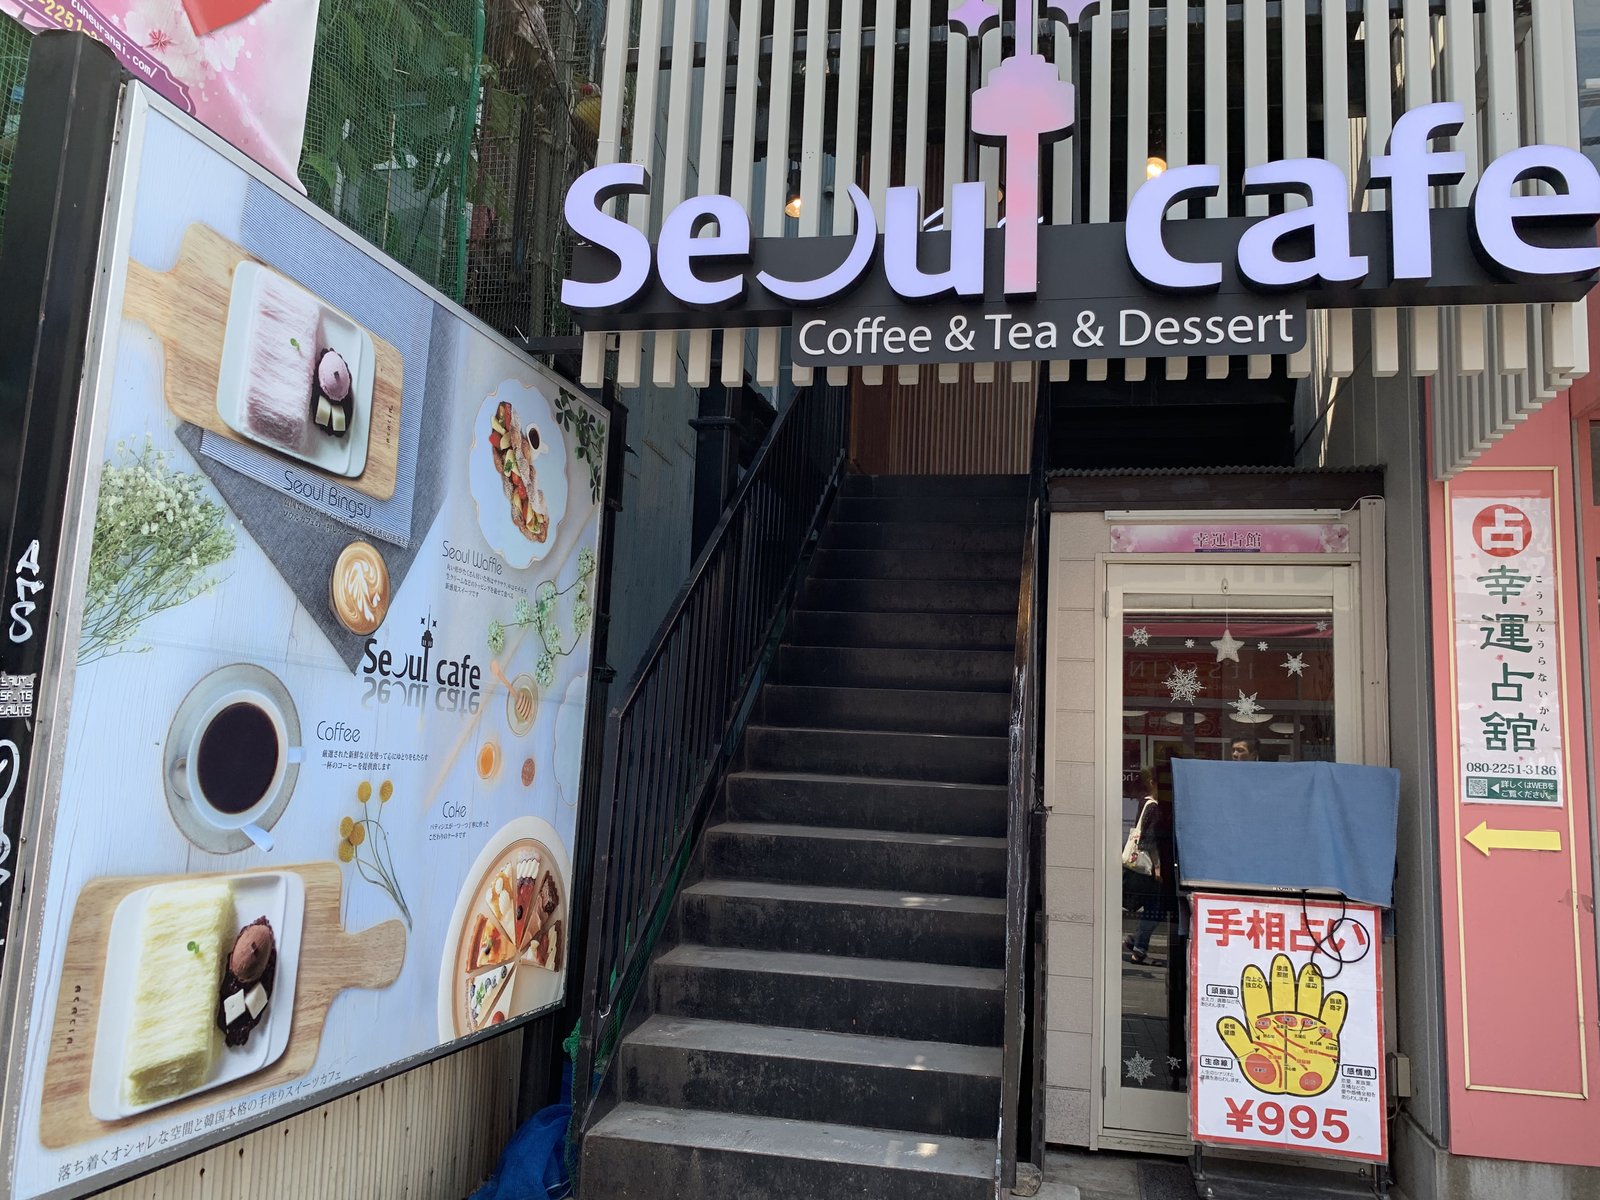 ナイフとフォークで食べるかき氷 新大久保 Seoul Cafe の新感覚スイーツ Playlife プレイライフ